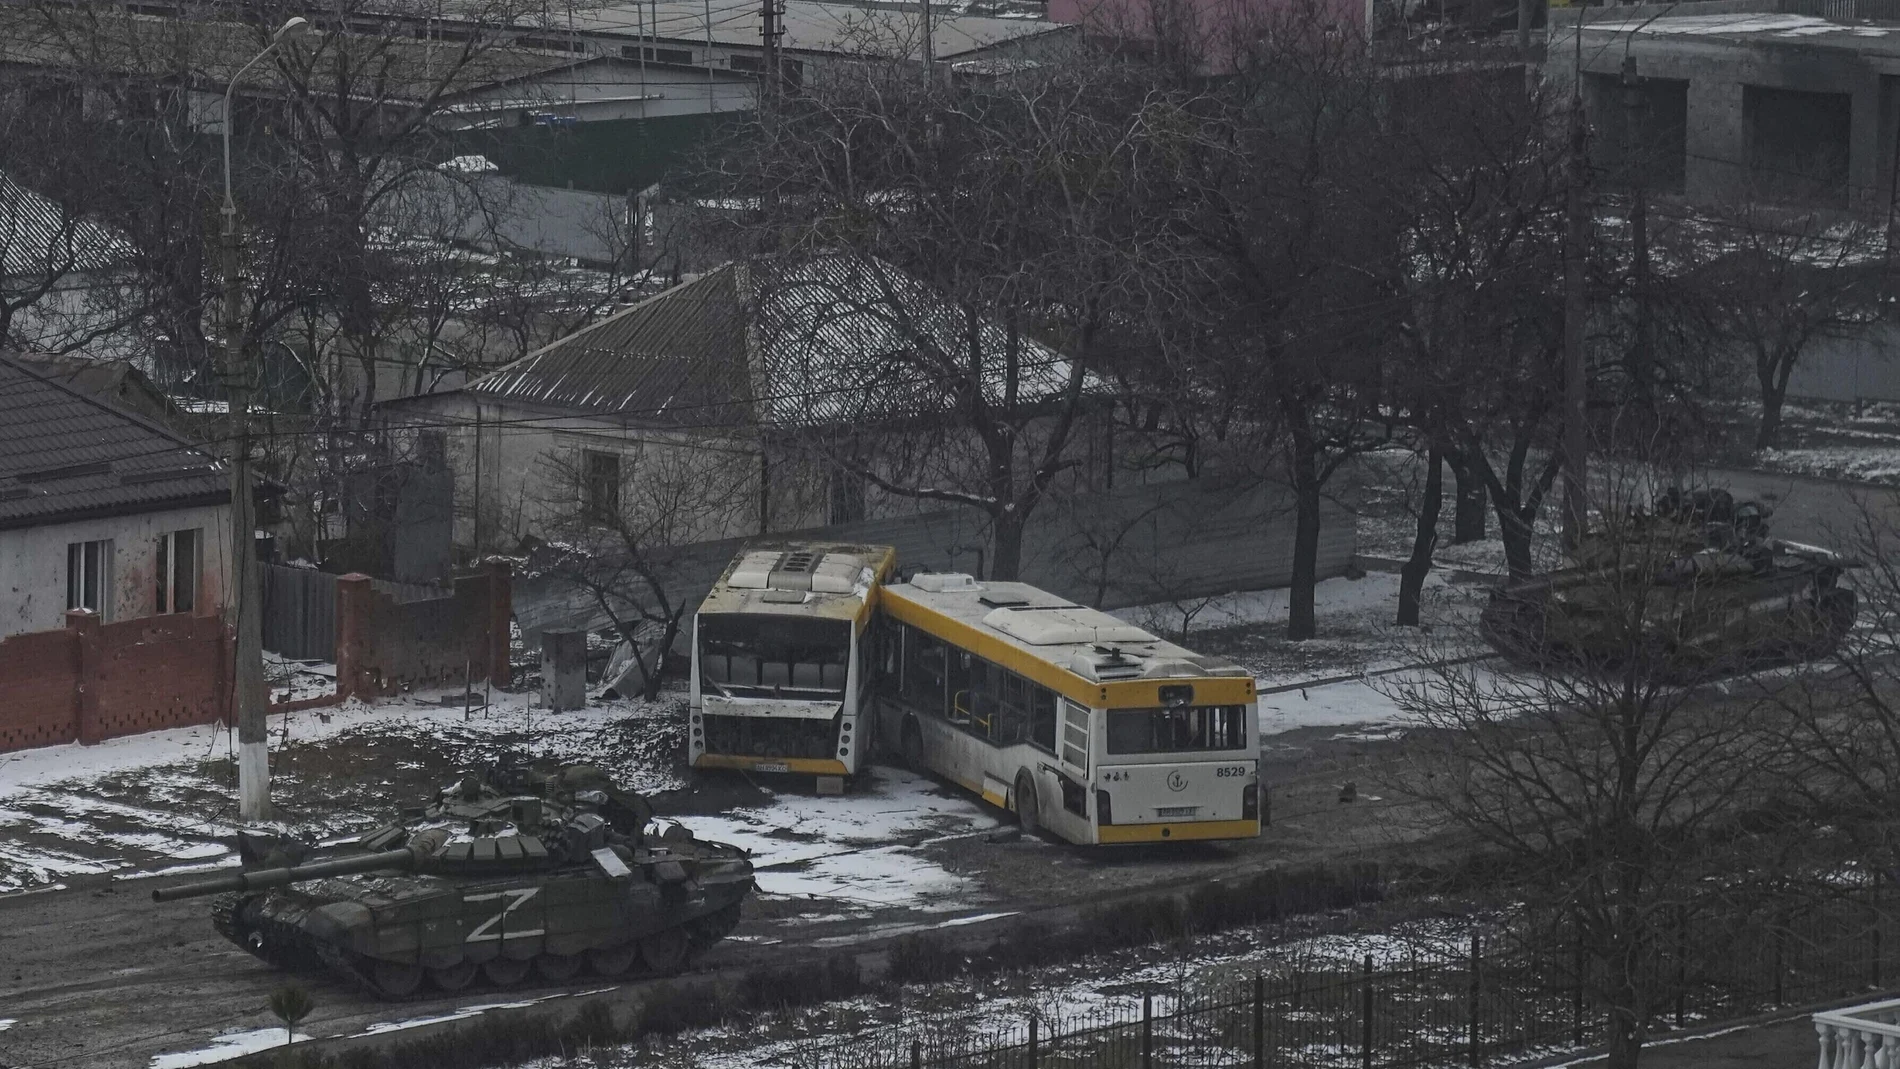 Tanques del ejército ruso avanzan por una calle en las afueras de Mariupol (AP Photo/Evgeniy Maloletka, File)